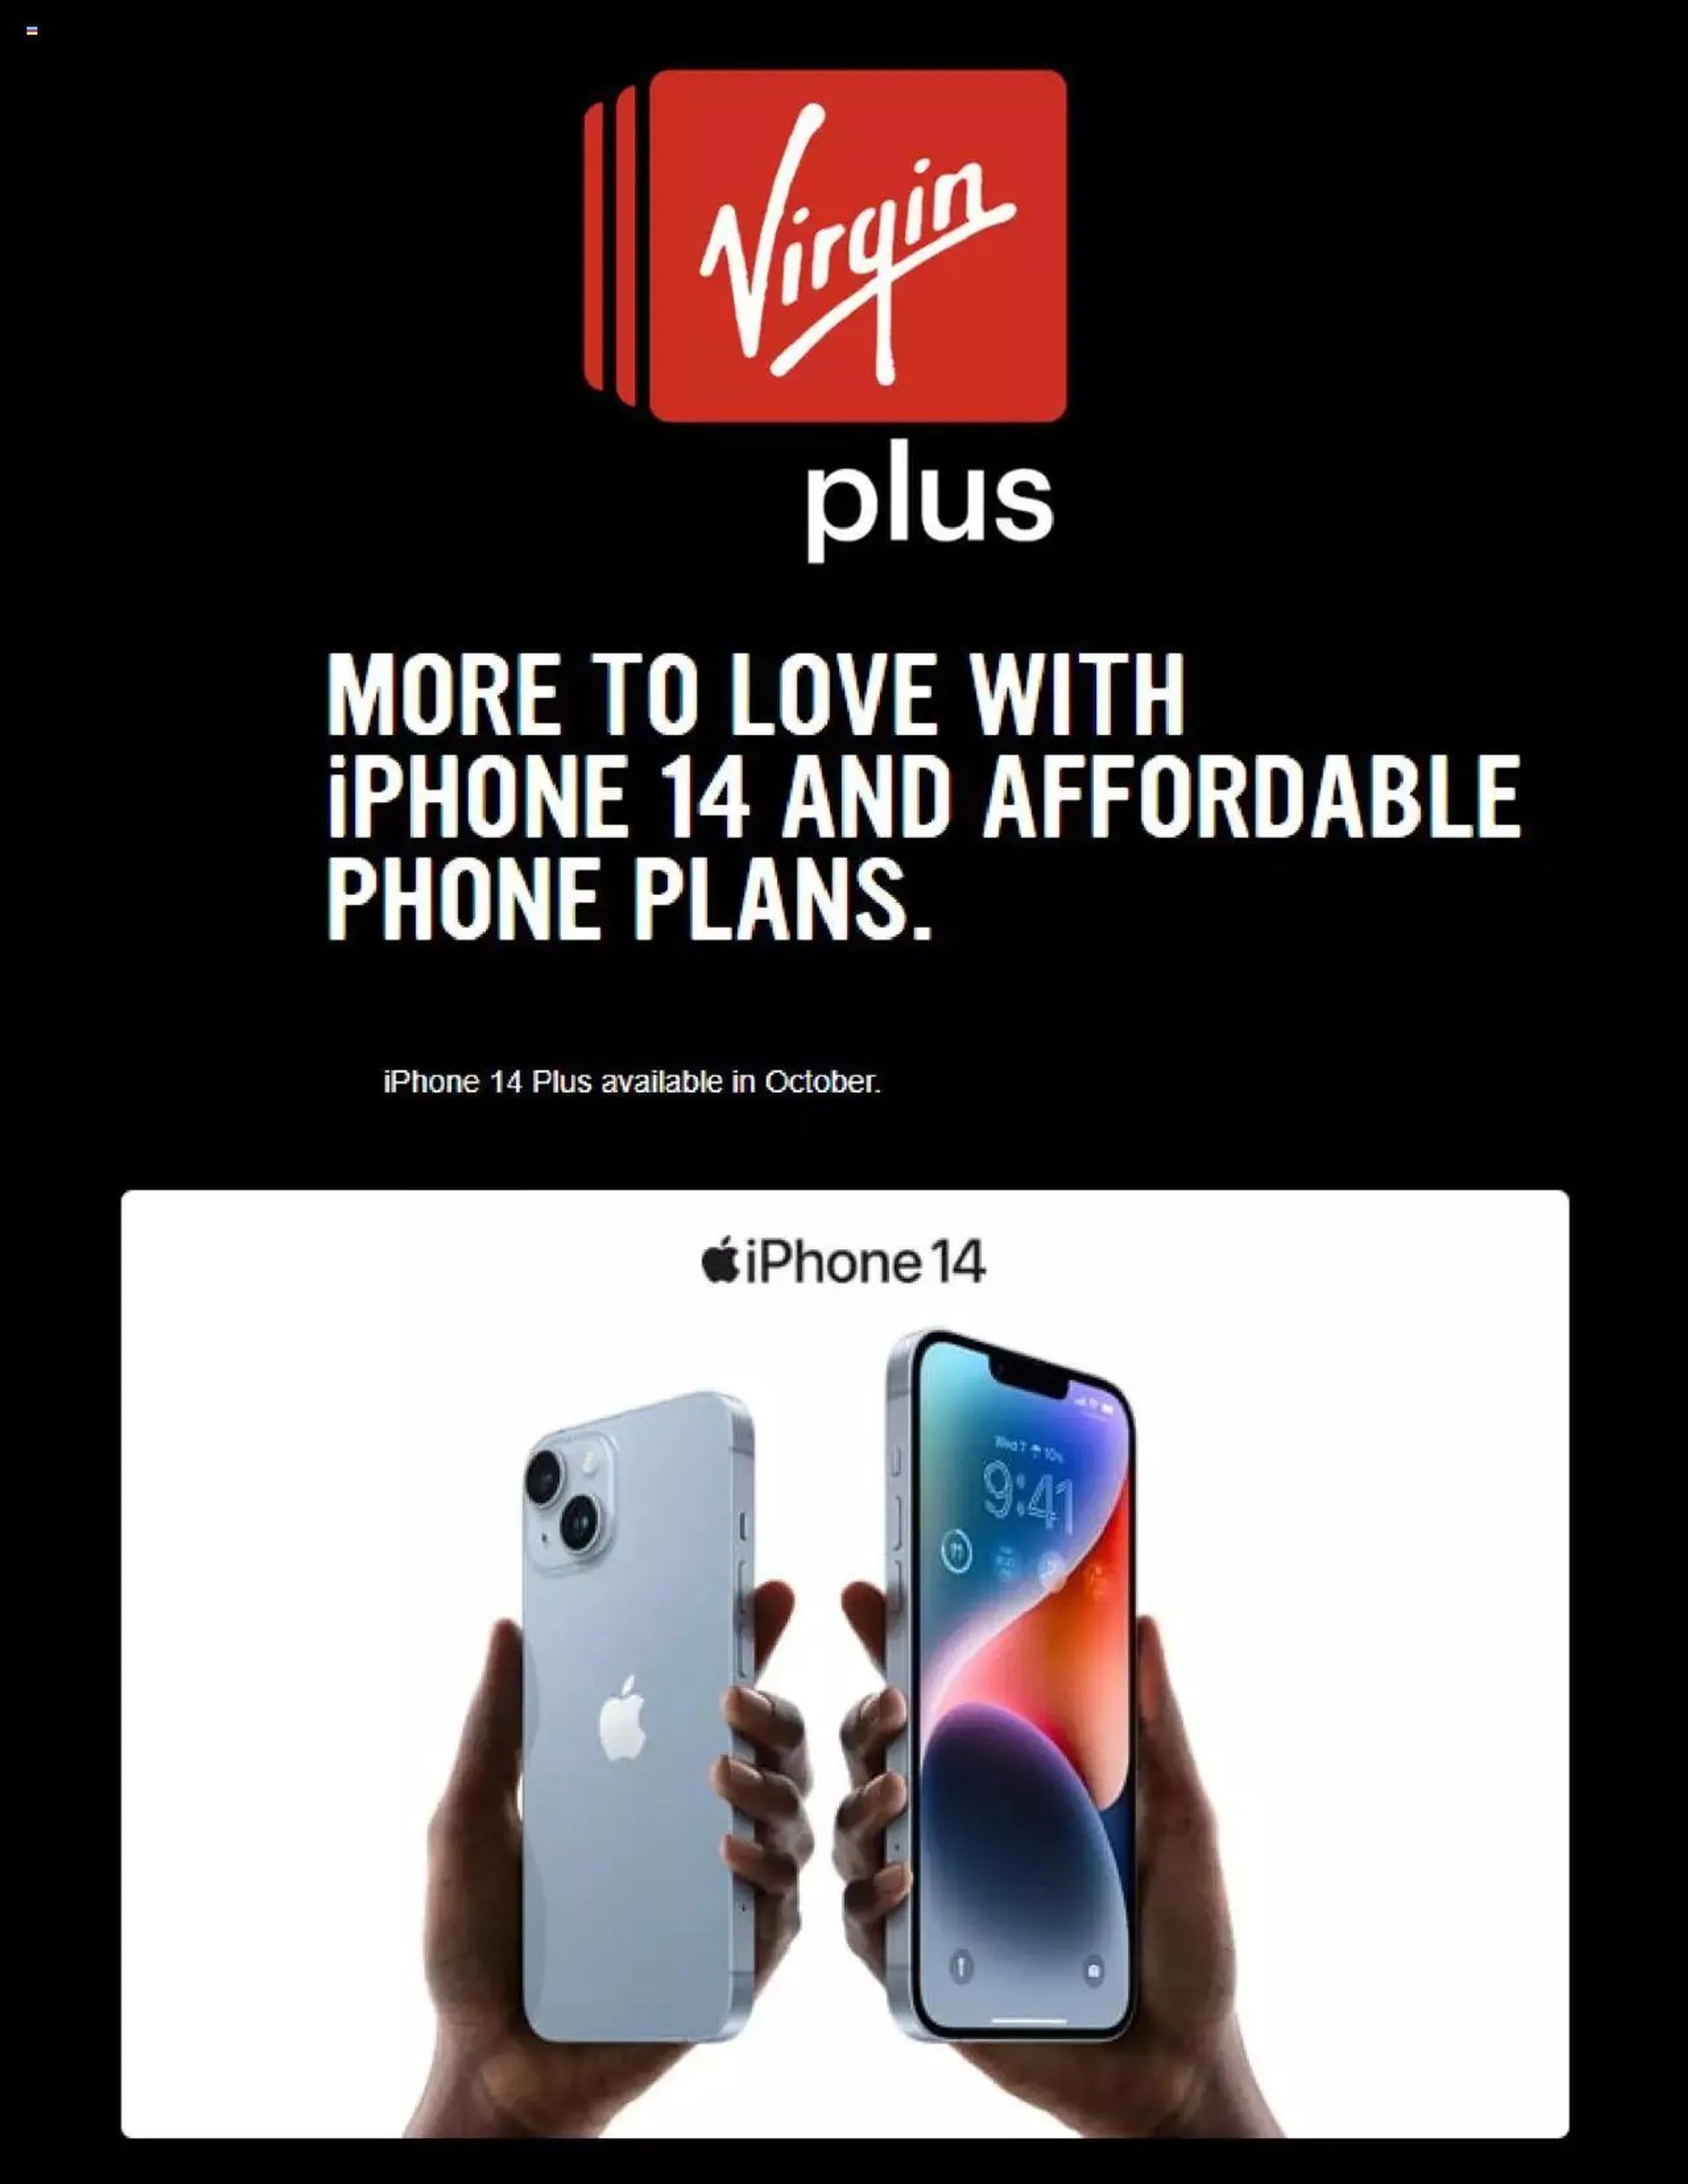 Virgin Plus Online Deals - 0